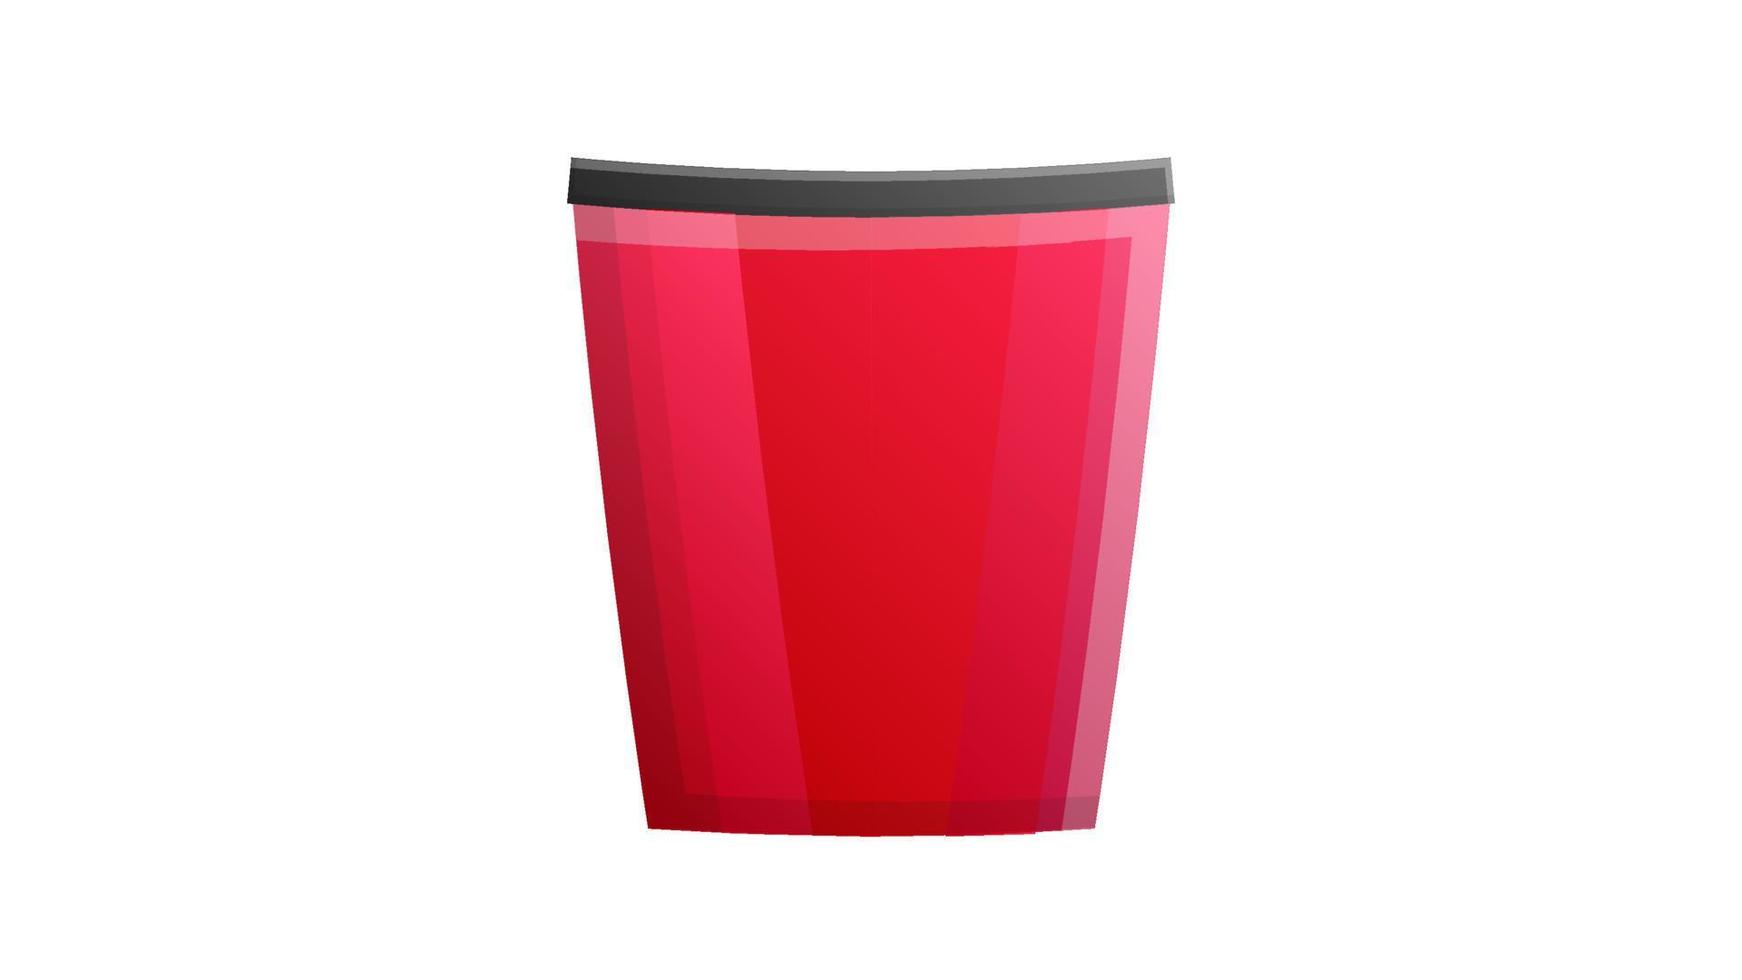 vaso para bebidas sobre un fondo blanco, ilustración vectorial. vaso rojo para café y té con tapa negra. Platos para cafeterías y restaurantes. vaso reutilizable para restaurantes y cafeterías vector